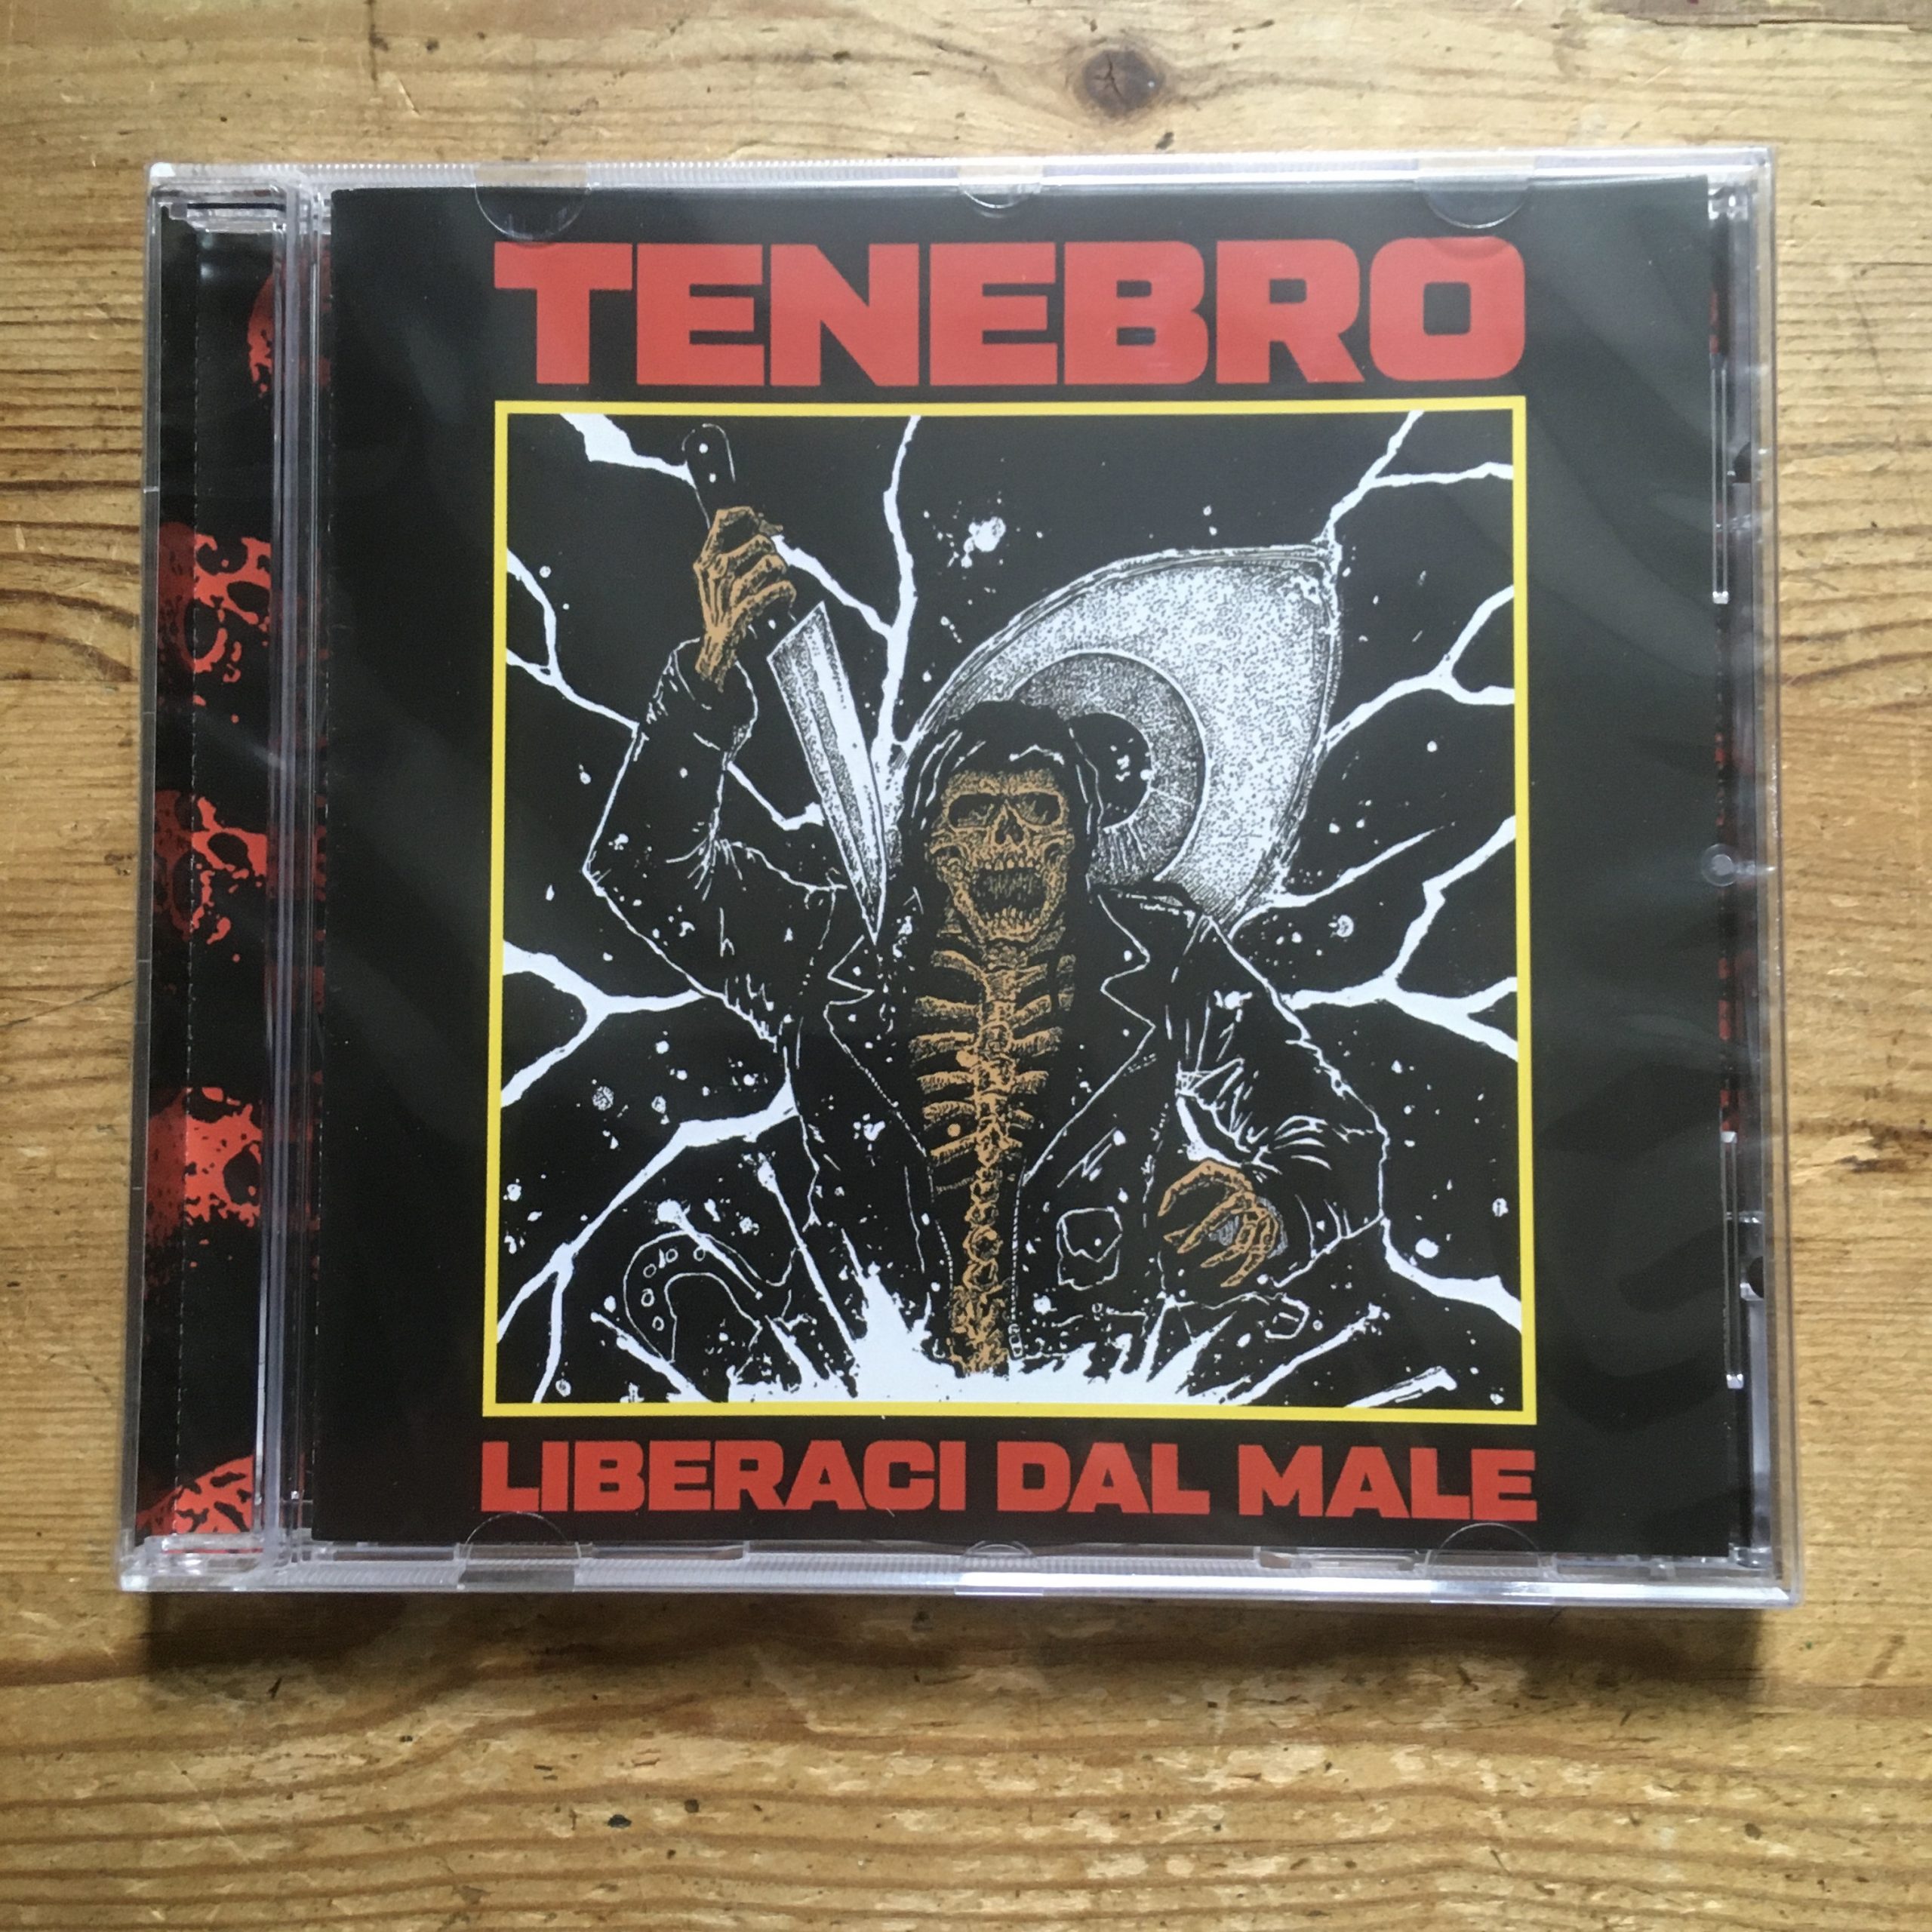 Photo of the Tenebro - 